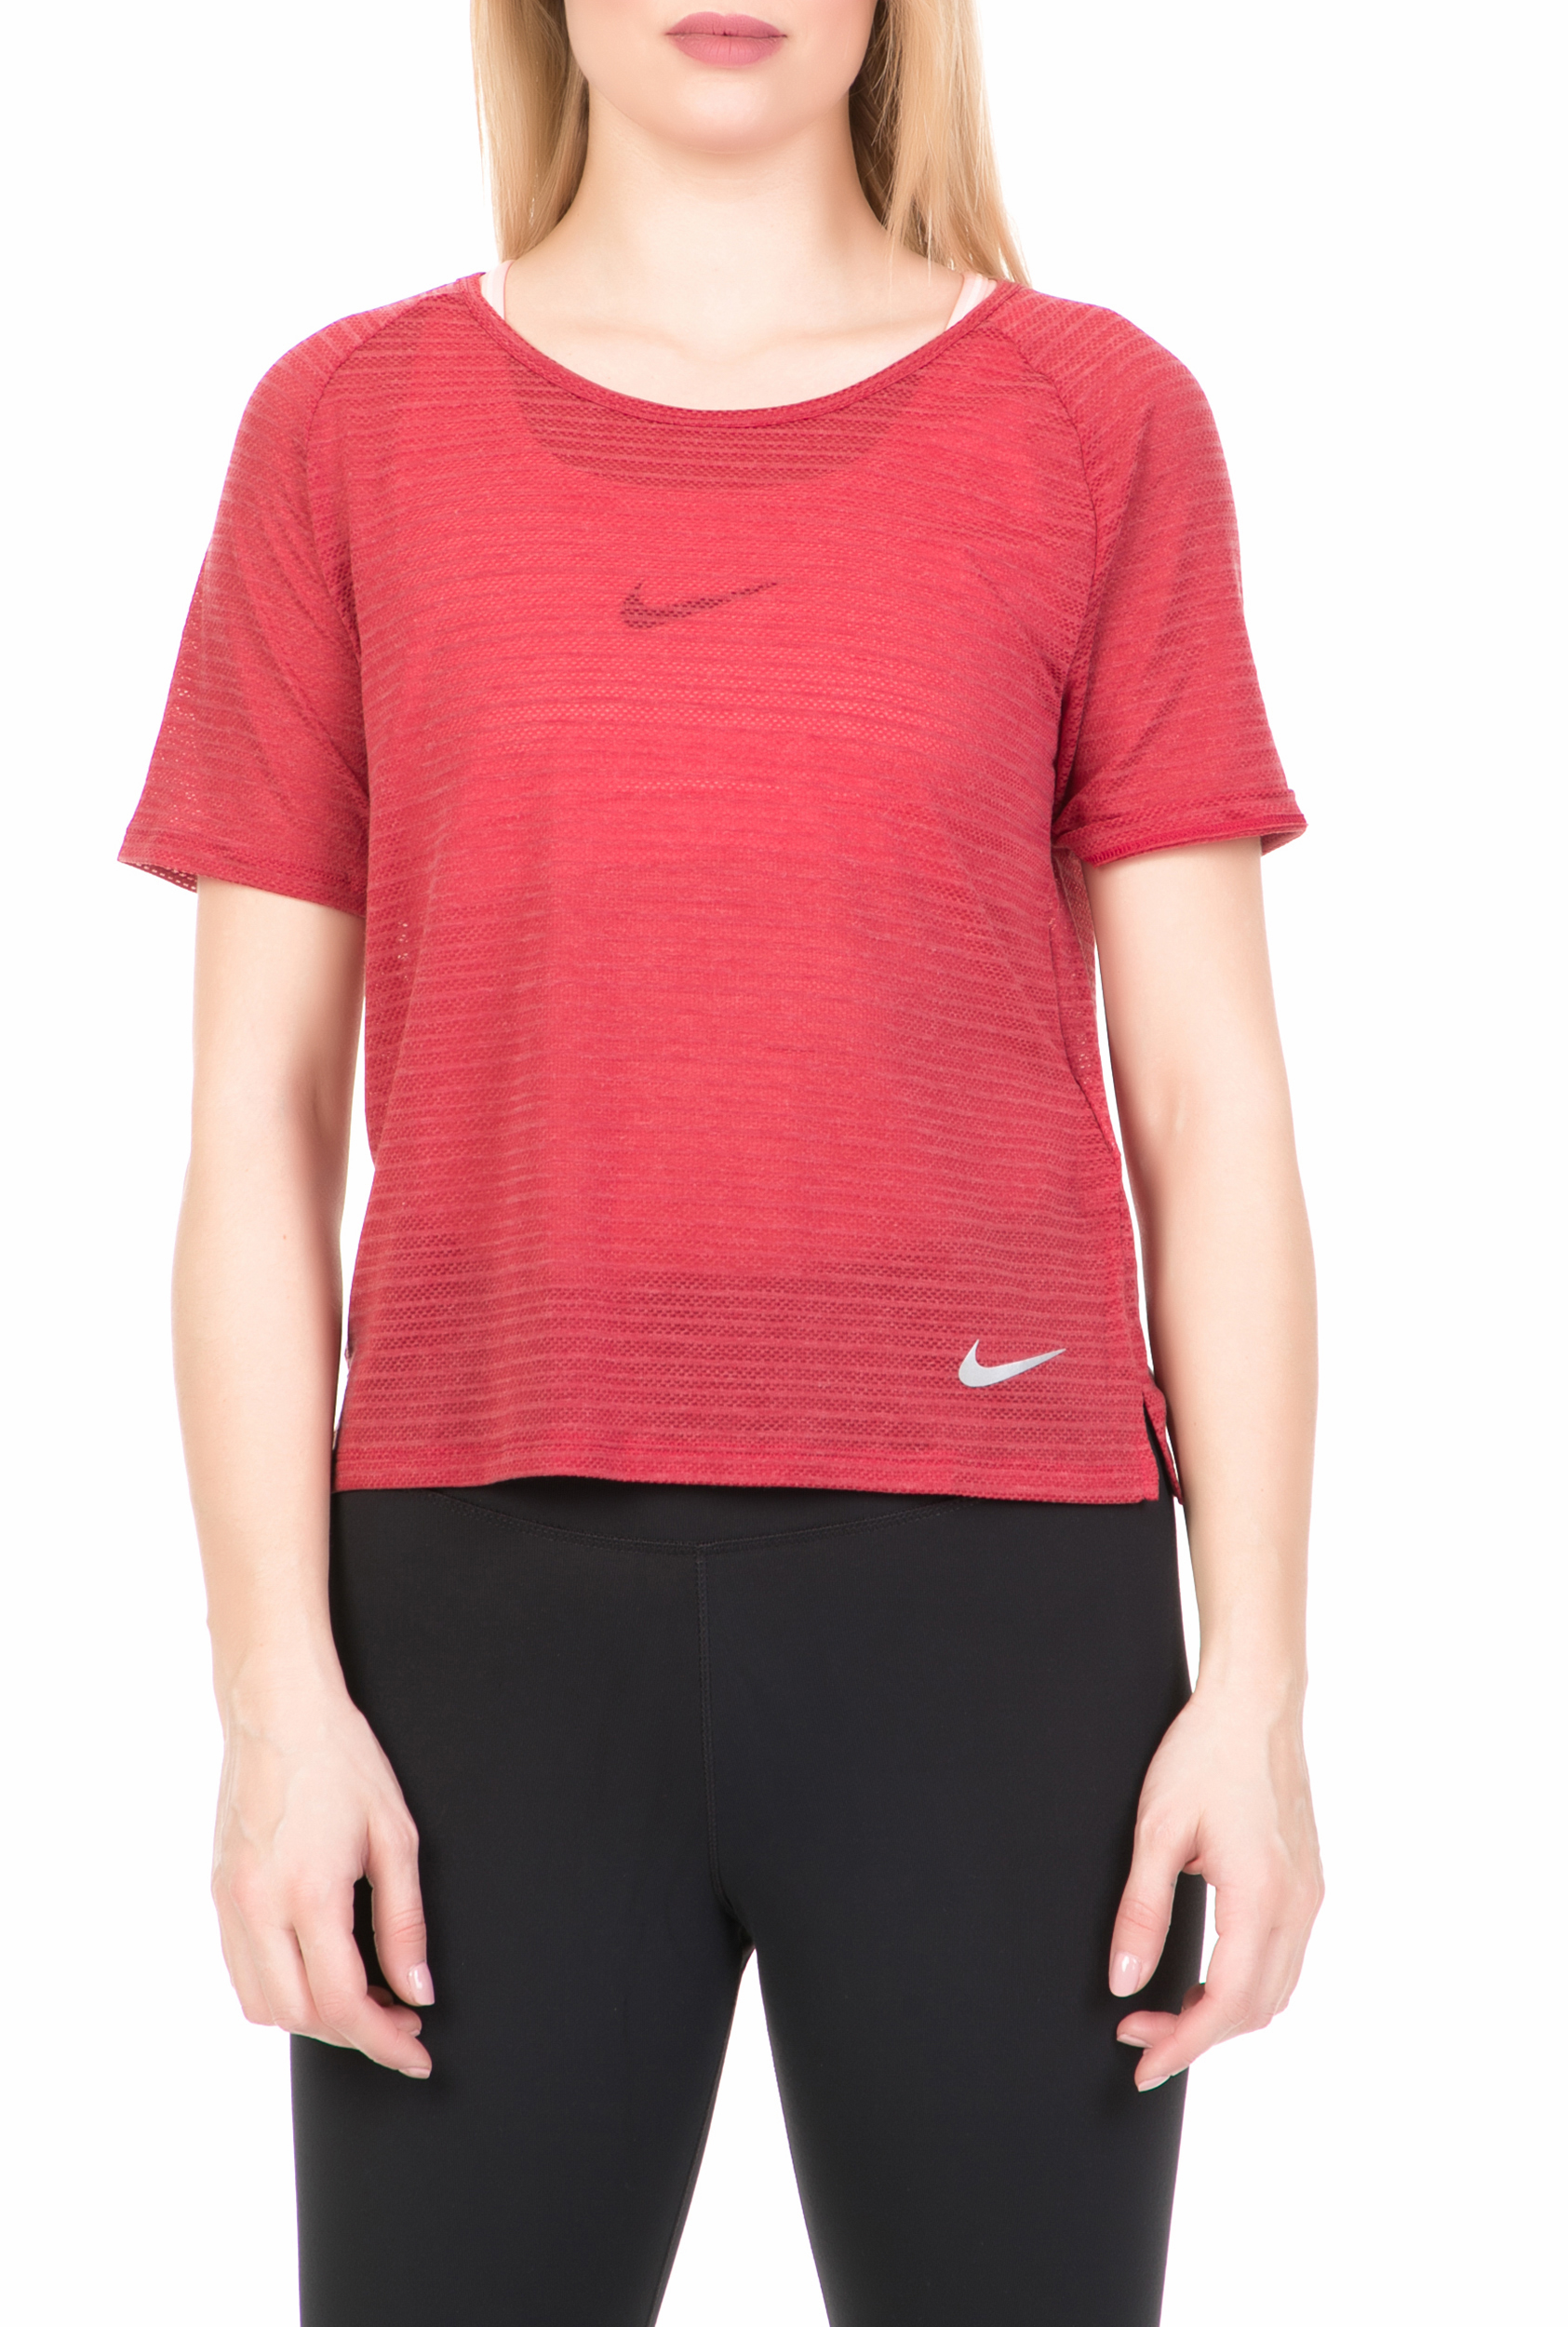 NIKE - Γυναικεία κοντομάνικη μπλούζα για τρέξιμο Nike Miler κόκκινη Γυναικεία/Ρούχα/Αθλητικά/T-shirt-Τοπ